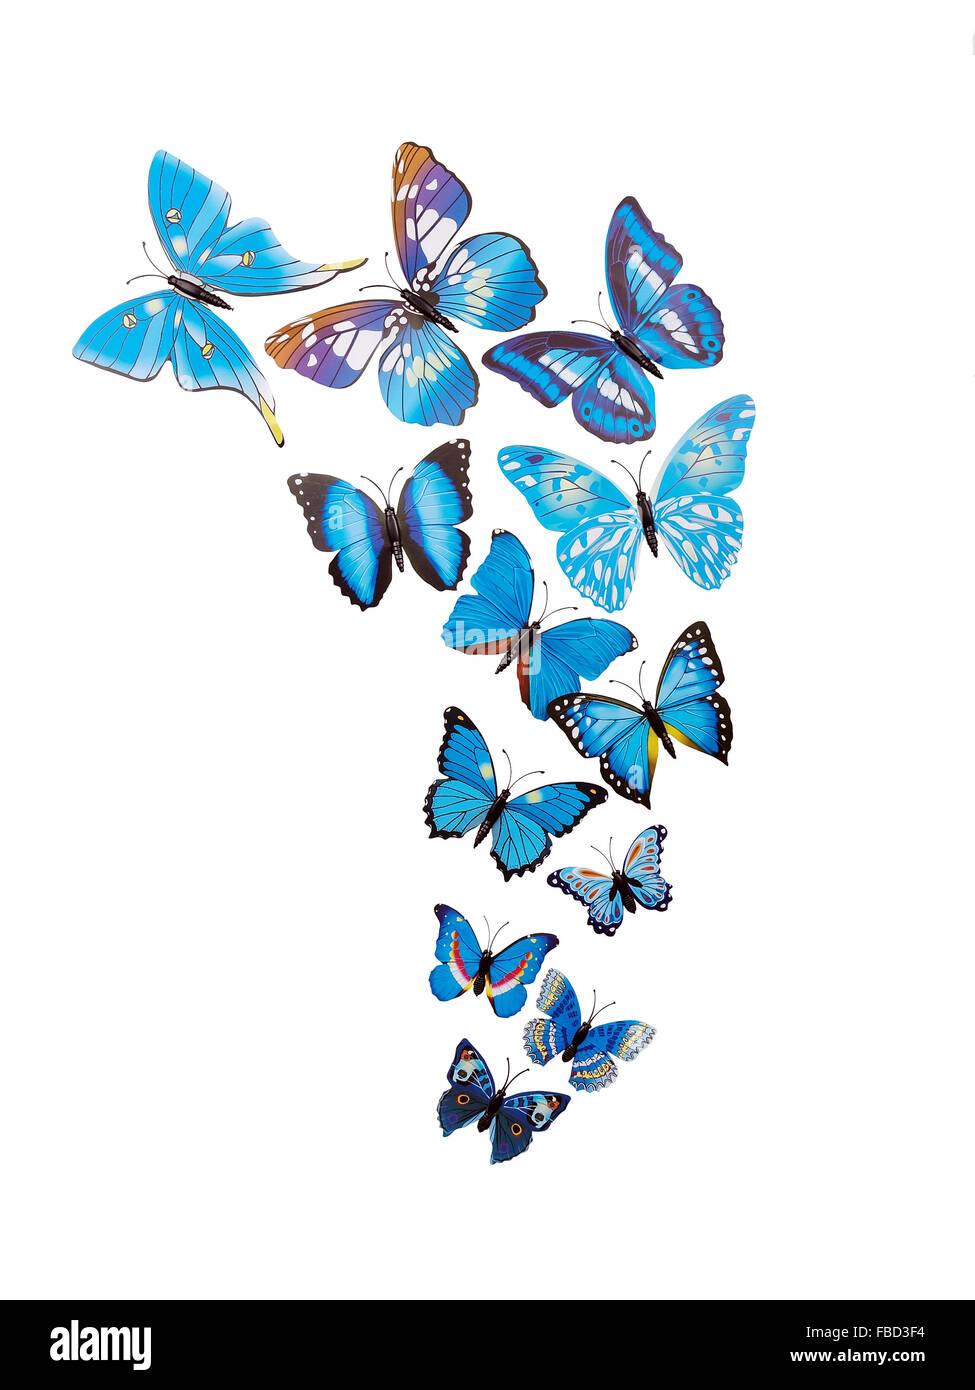 Farfalle adesivi parete isolata su sfondo bianco Foto Stock